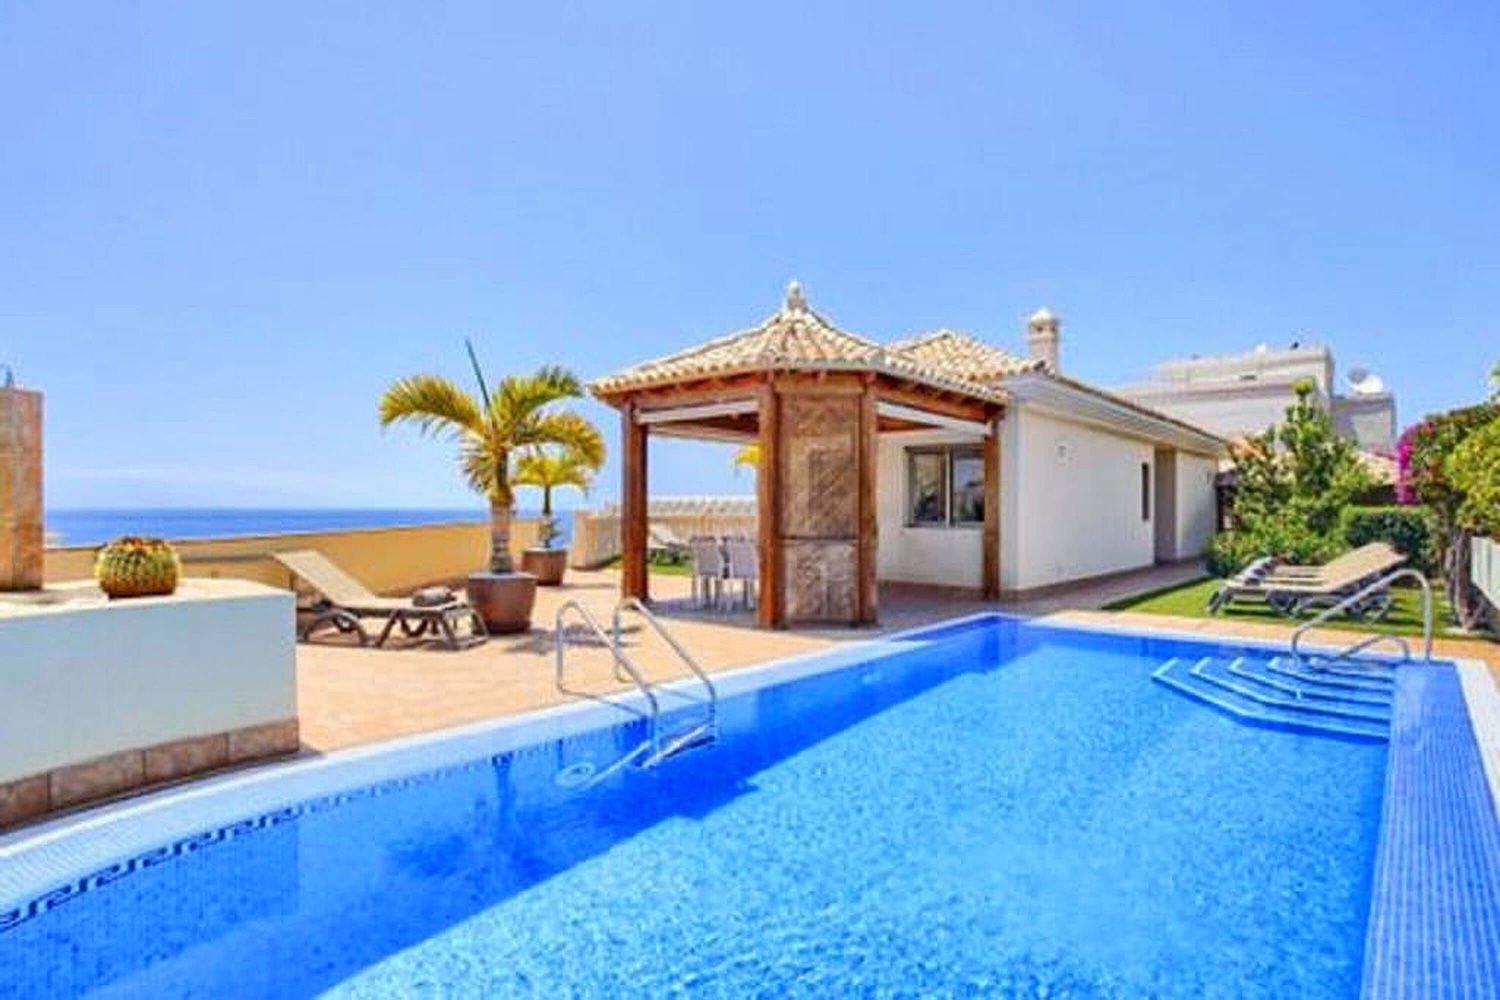 Onafhankelijke, moderne, ruime en lichte villa. Het is gelegen in Puerto de Santiago en heeft een prachtig uitzicht.